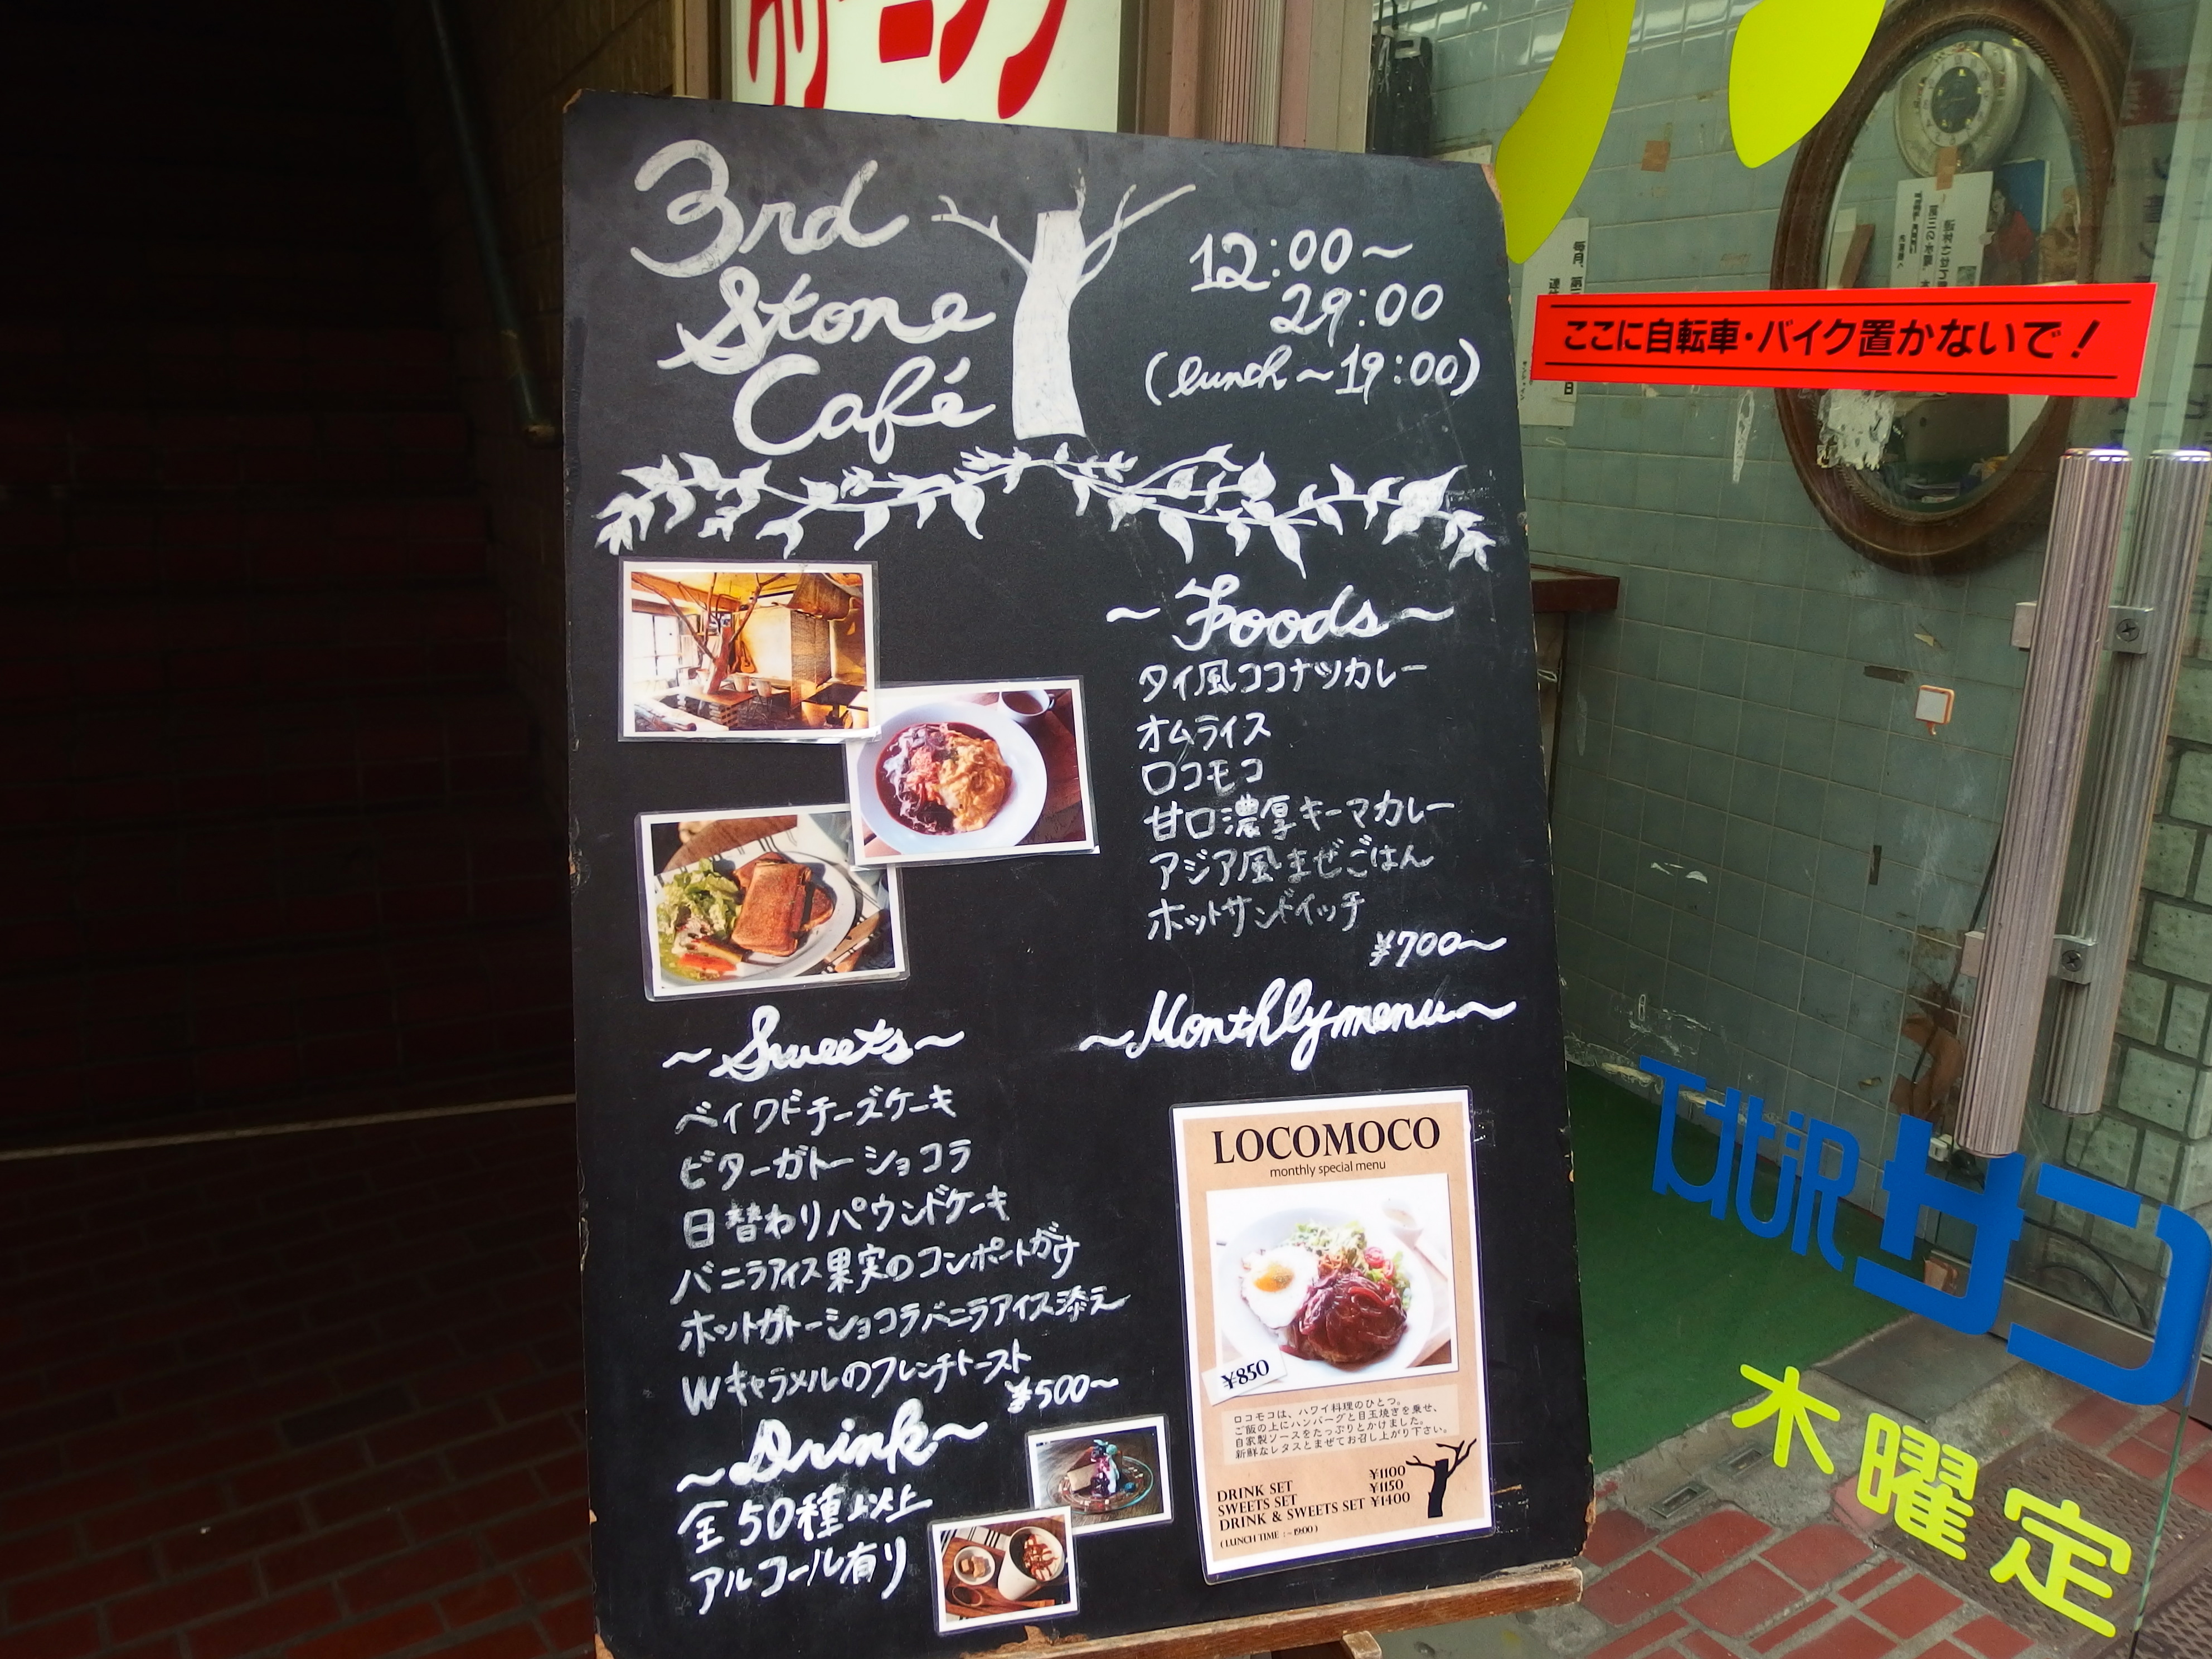 チーズケーキが絶品 下北沢のオススメカフェ3rd Stone Cafe 下北沢 カフェ 上北沢タイムズ